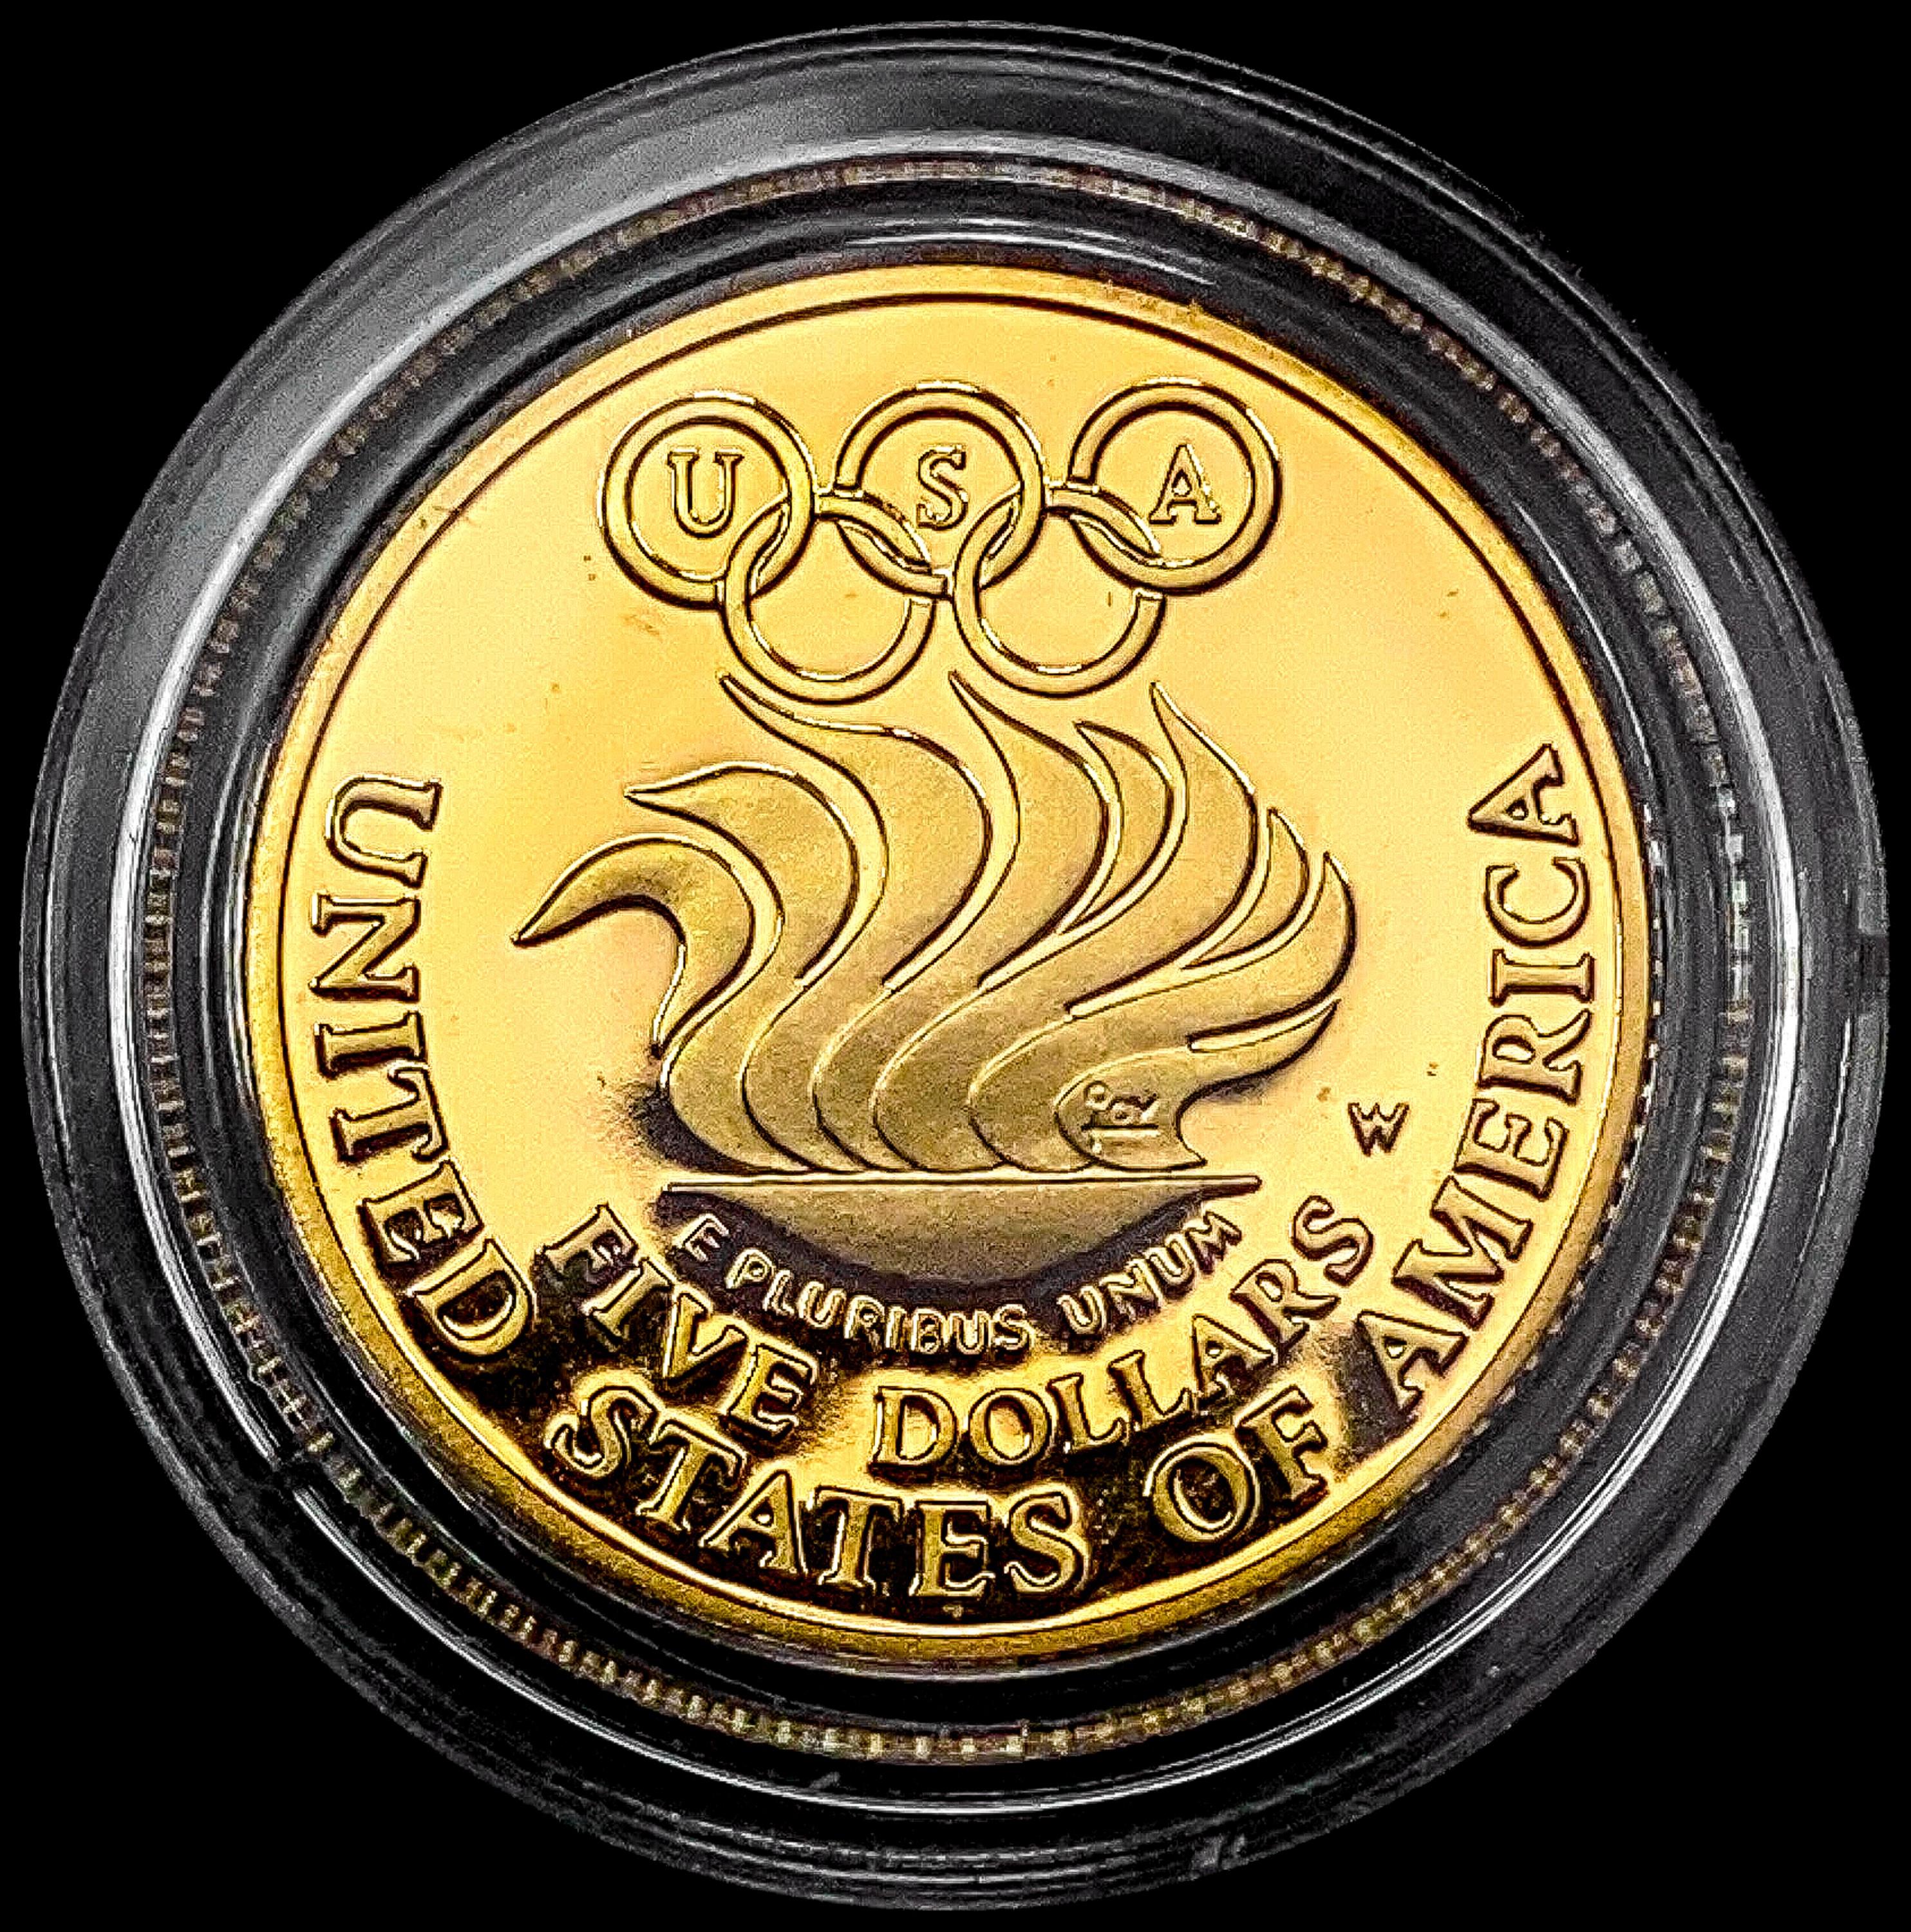 1988-W US Liberty Commem .25oz Gold $5 GEM PROOF